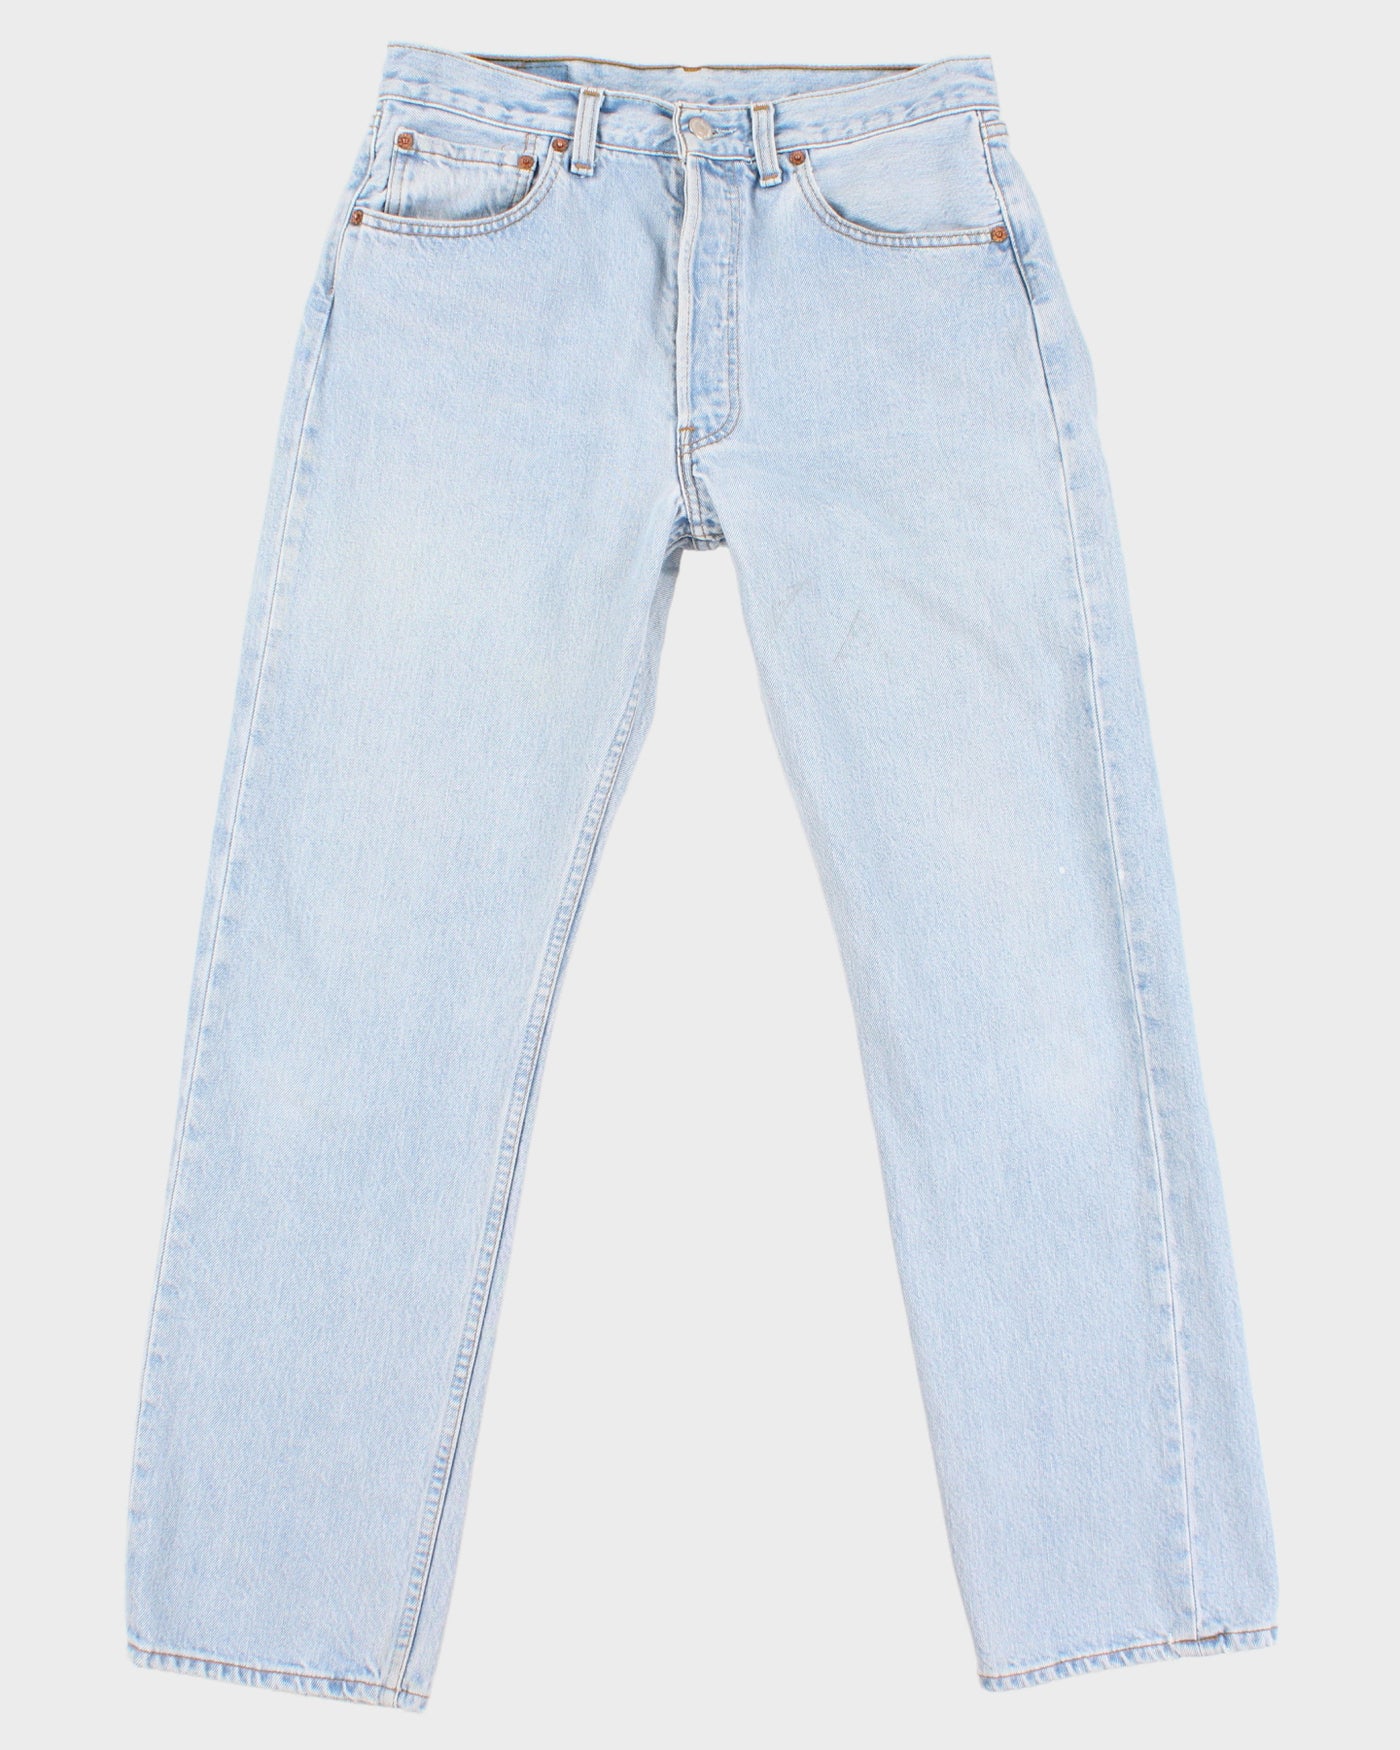 Vintage 90s Levi's Light Wash Blue Denim 501 Jeans - W28 L27